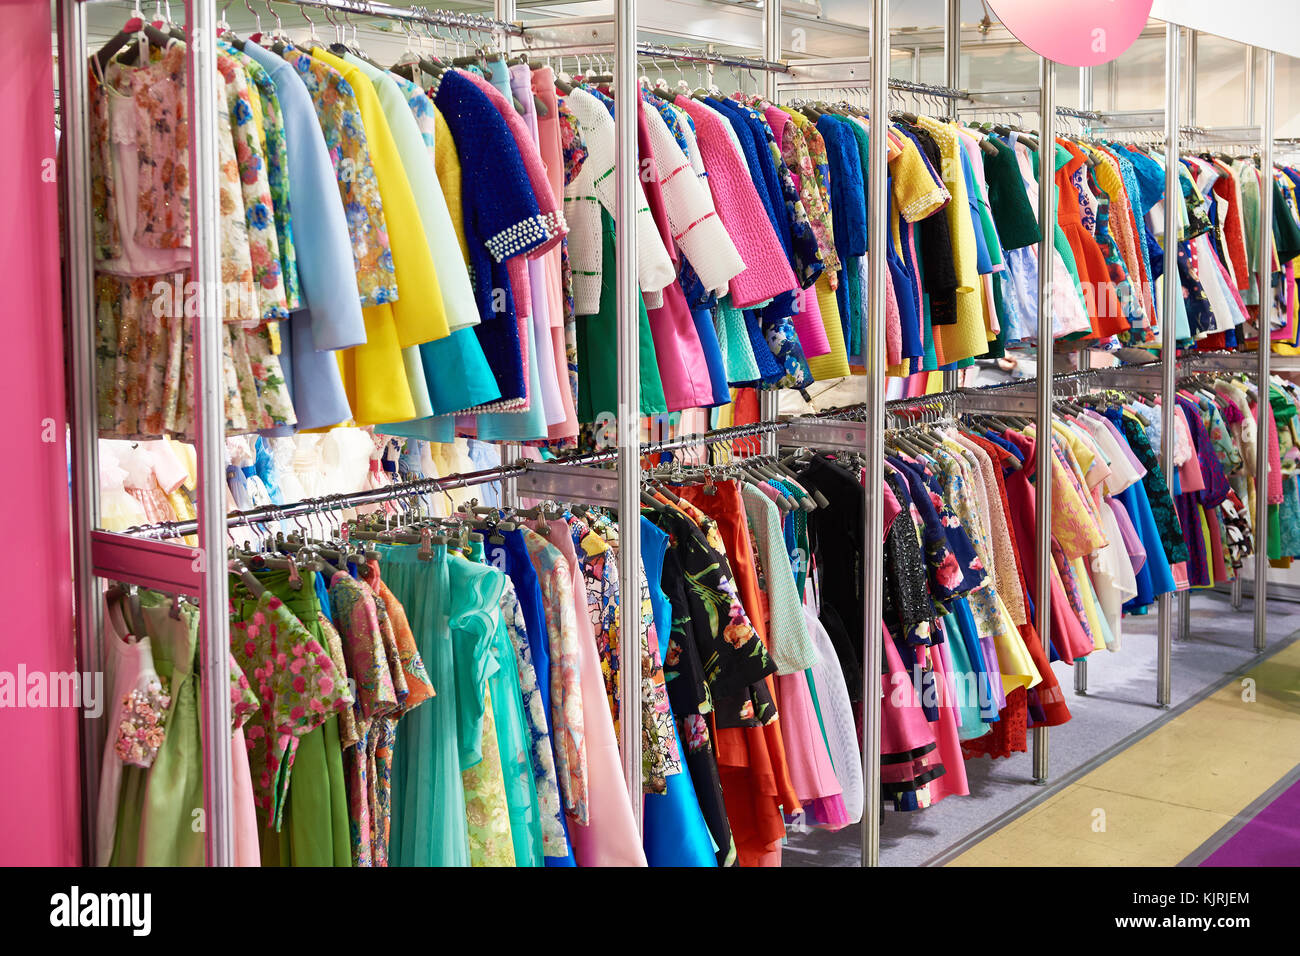 https://c8.alamy.com/comp/KJRJEM/womens-clothing-on-the-hanger-in-the-store-KJRJEM.jpg